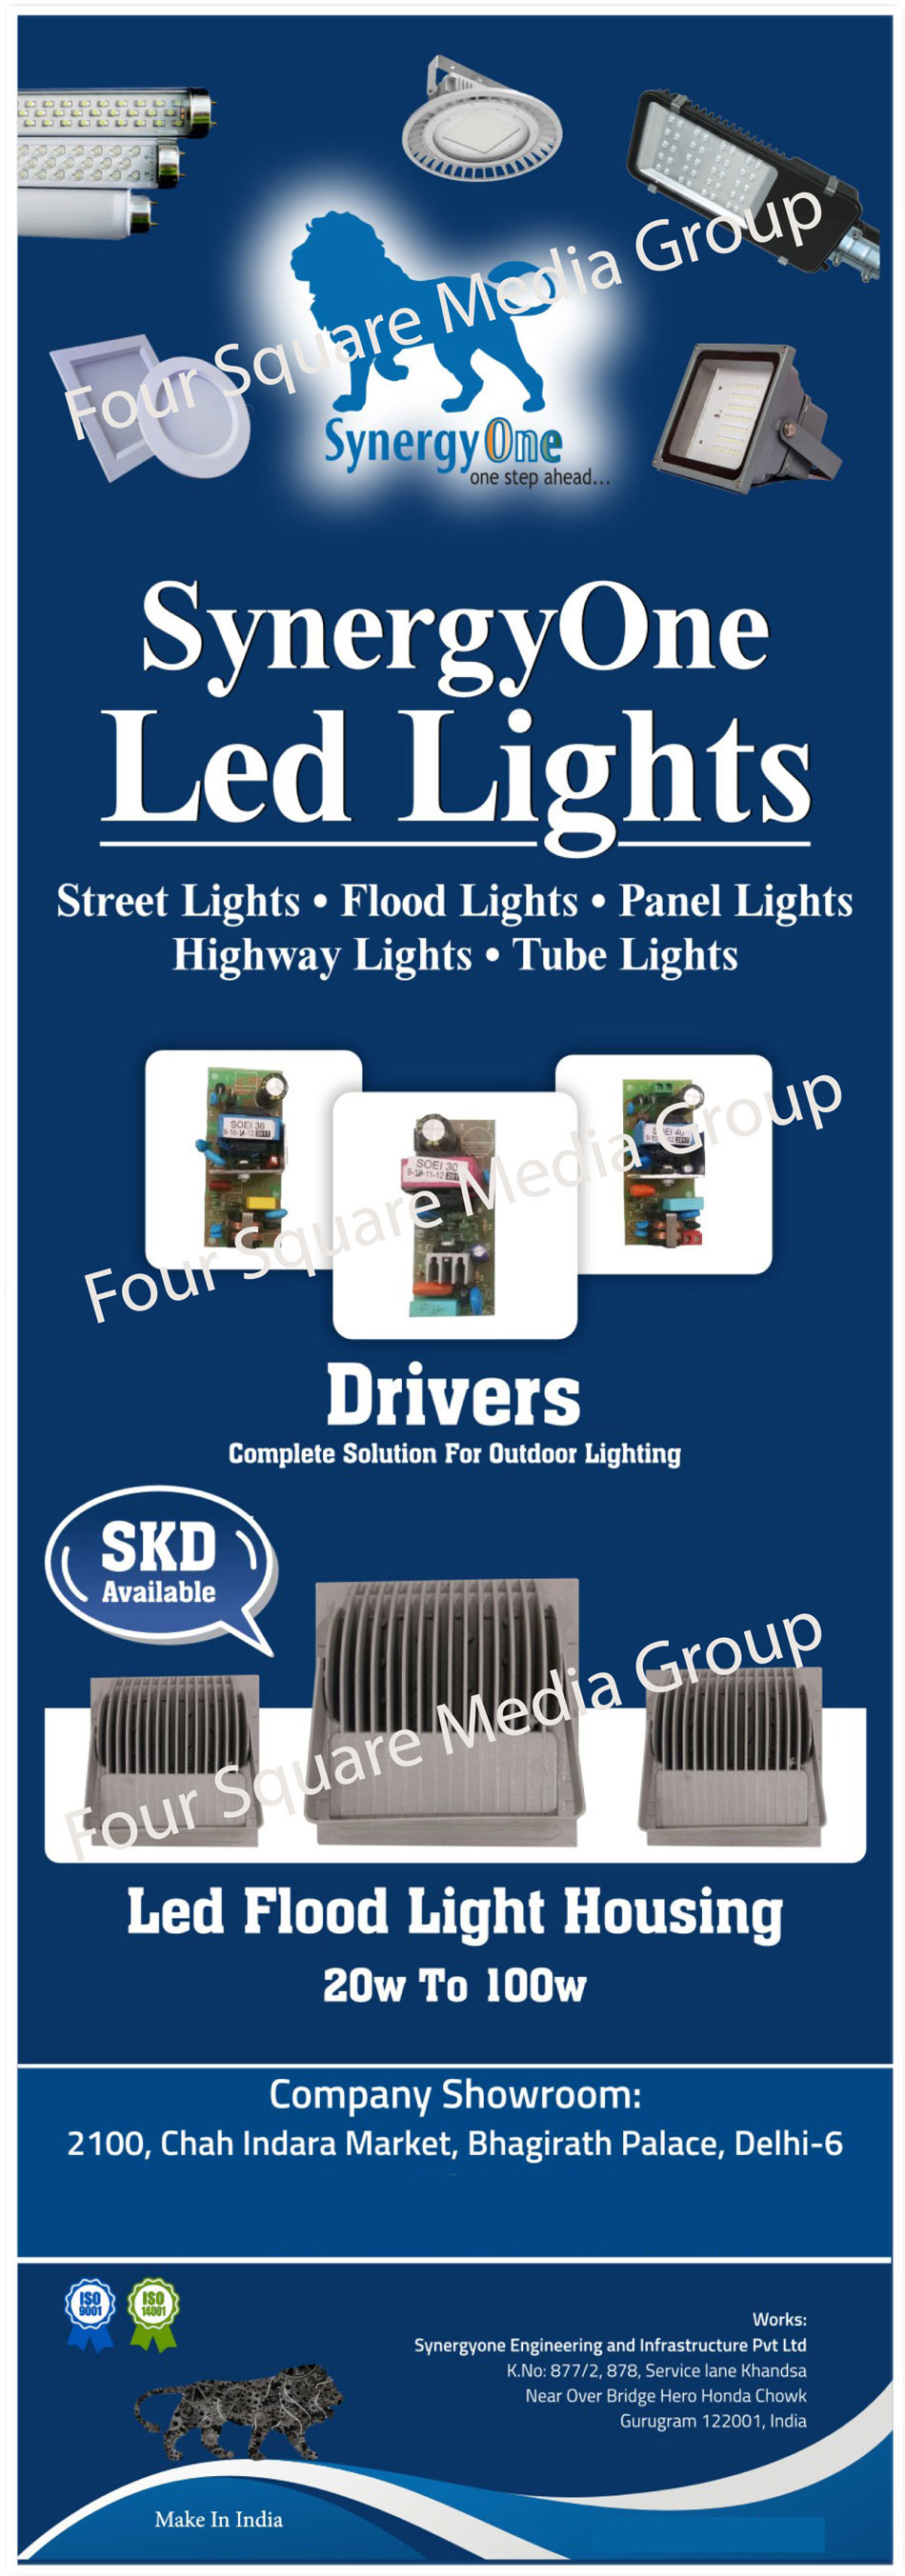 Led Lights, Street Lights, Flood Lights, Panel Lights, High Bay Lights, Tube Lights, Led Drivers, SKD Led Lights, Led Flood Light Housings